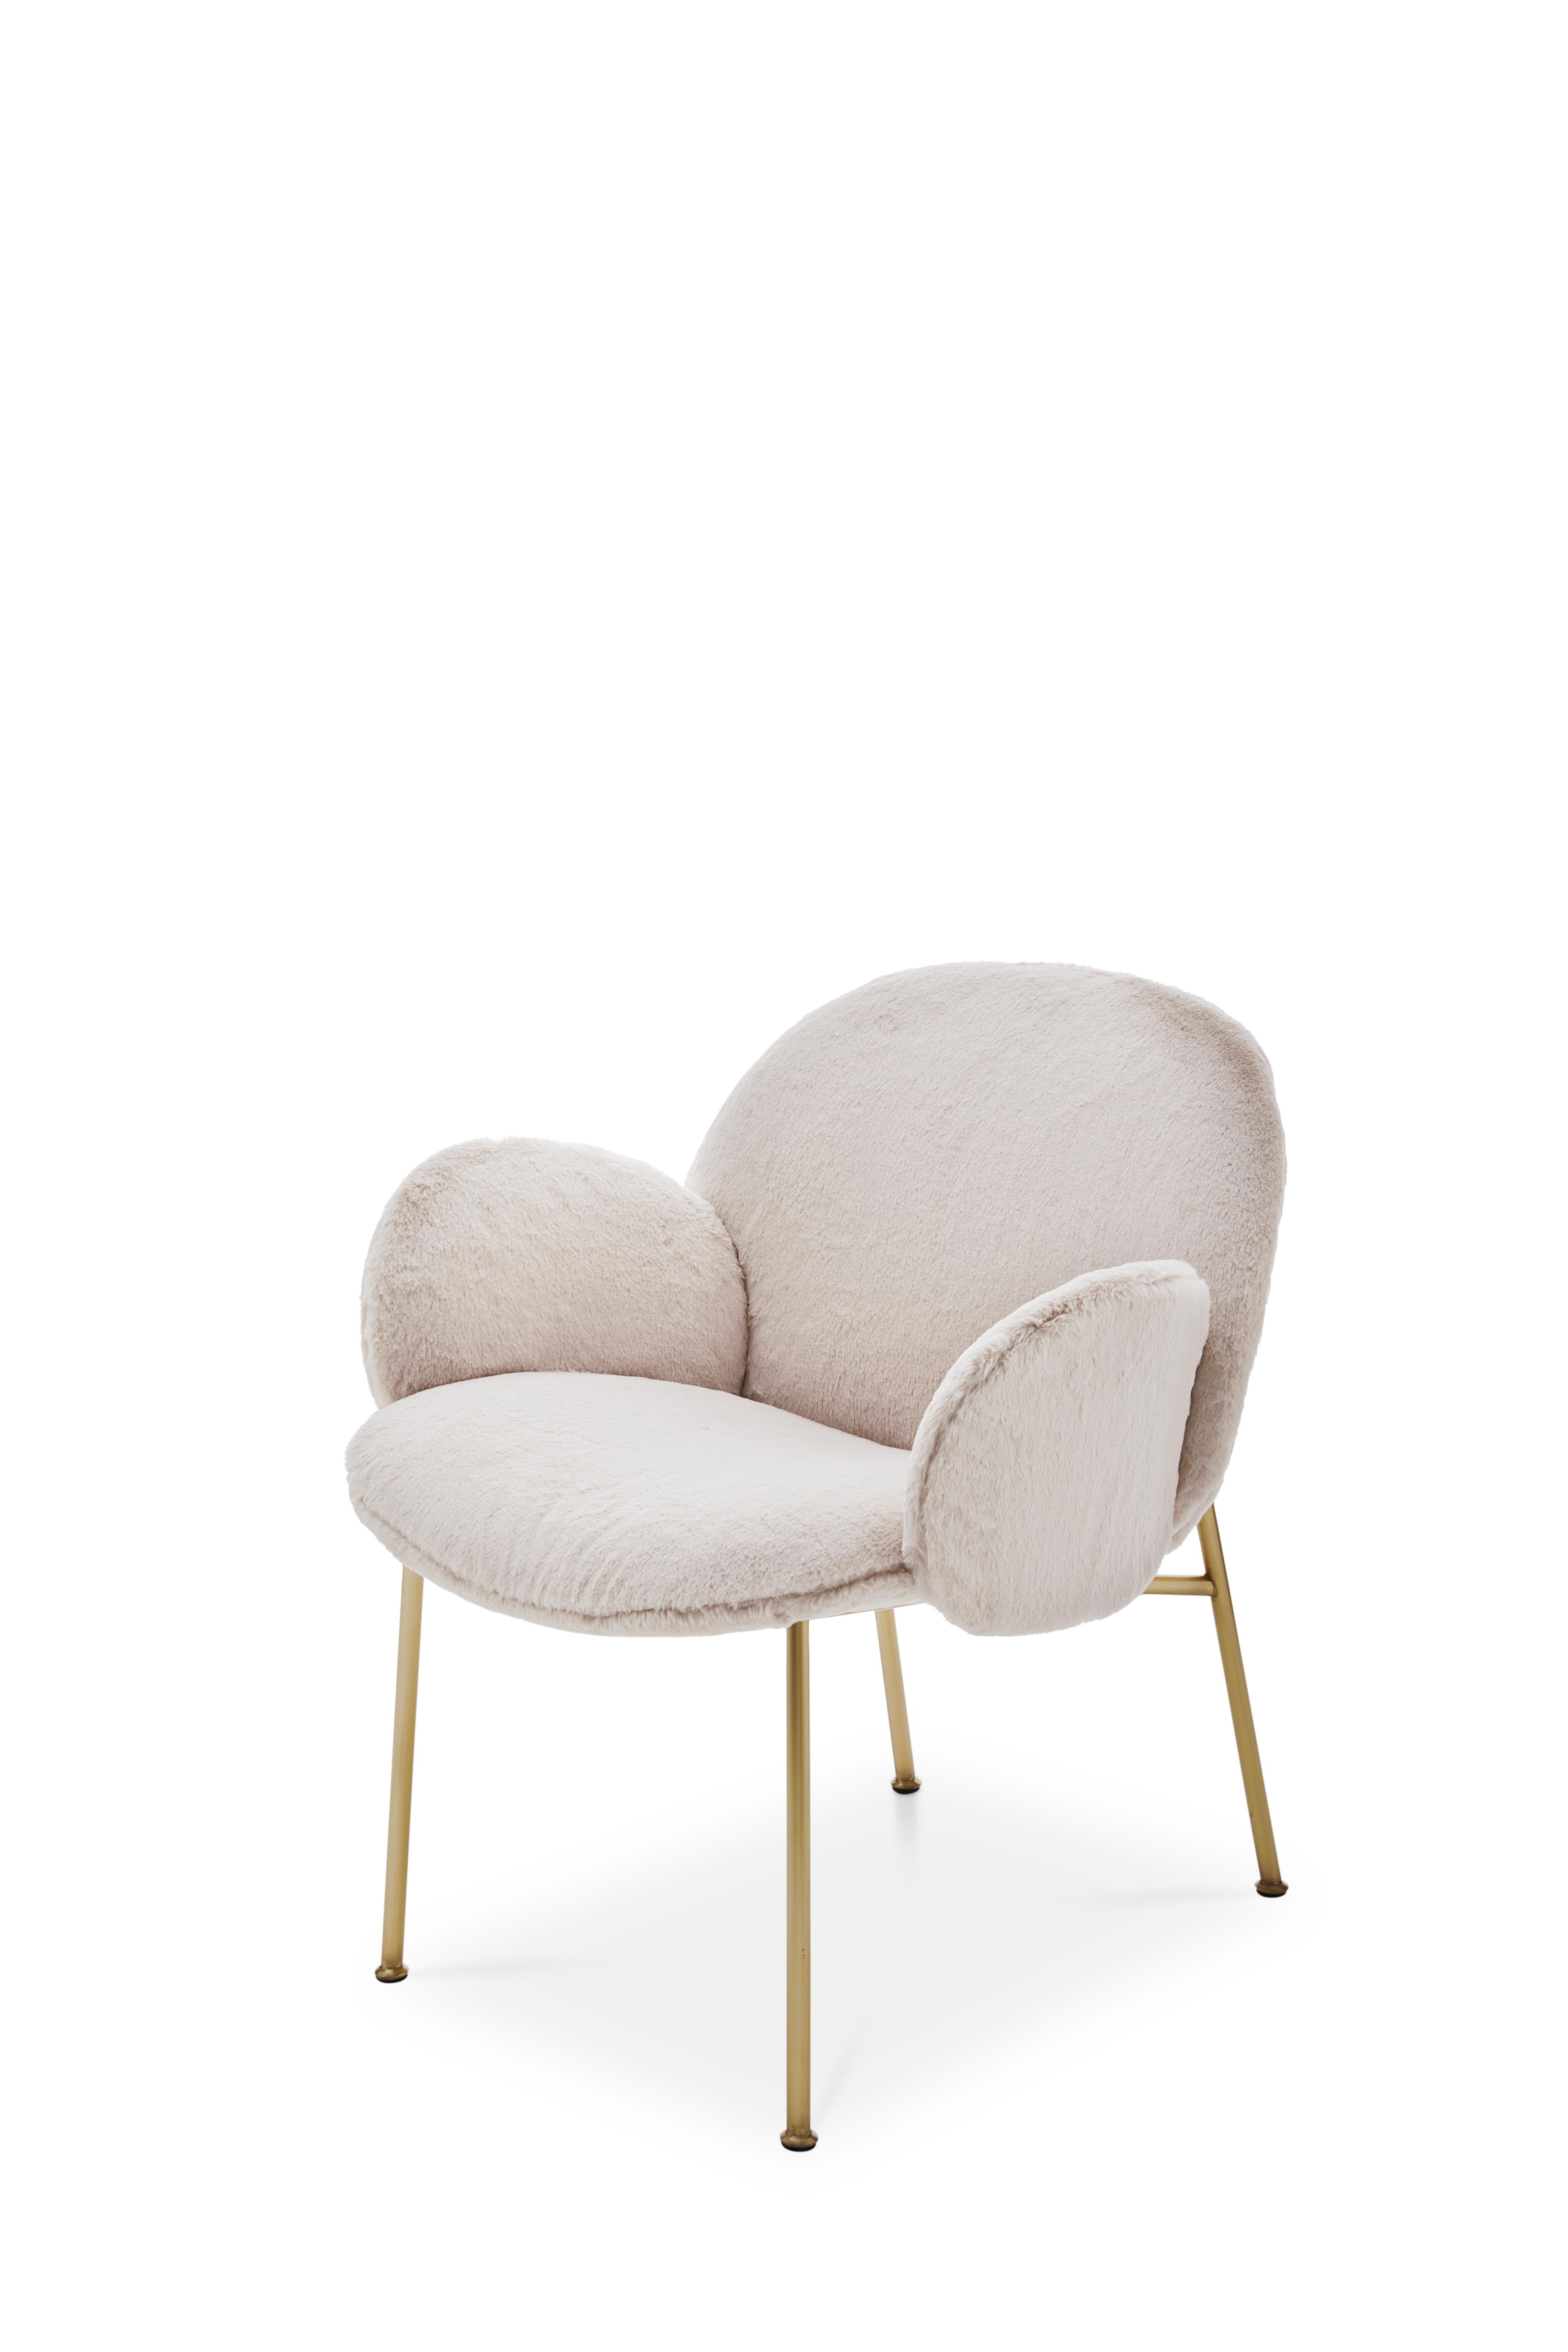 Ola est né d'une idée simple mais représente en même temps un concept complexe - un fauteuil accueillant créé à l'aide de quatre feuilles courbes individuelles. Chaque feuille converge vers un centre unique. Quatre feuilles deviennent deux feuilles